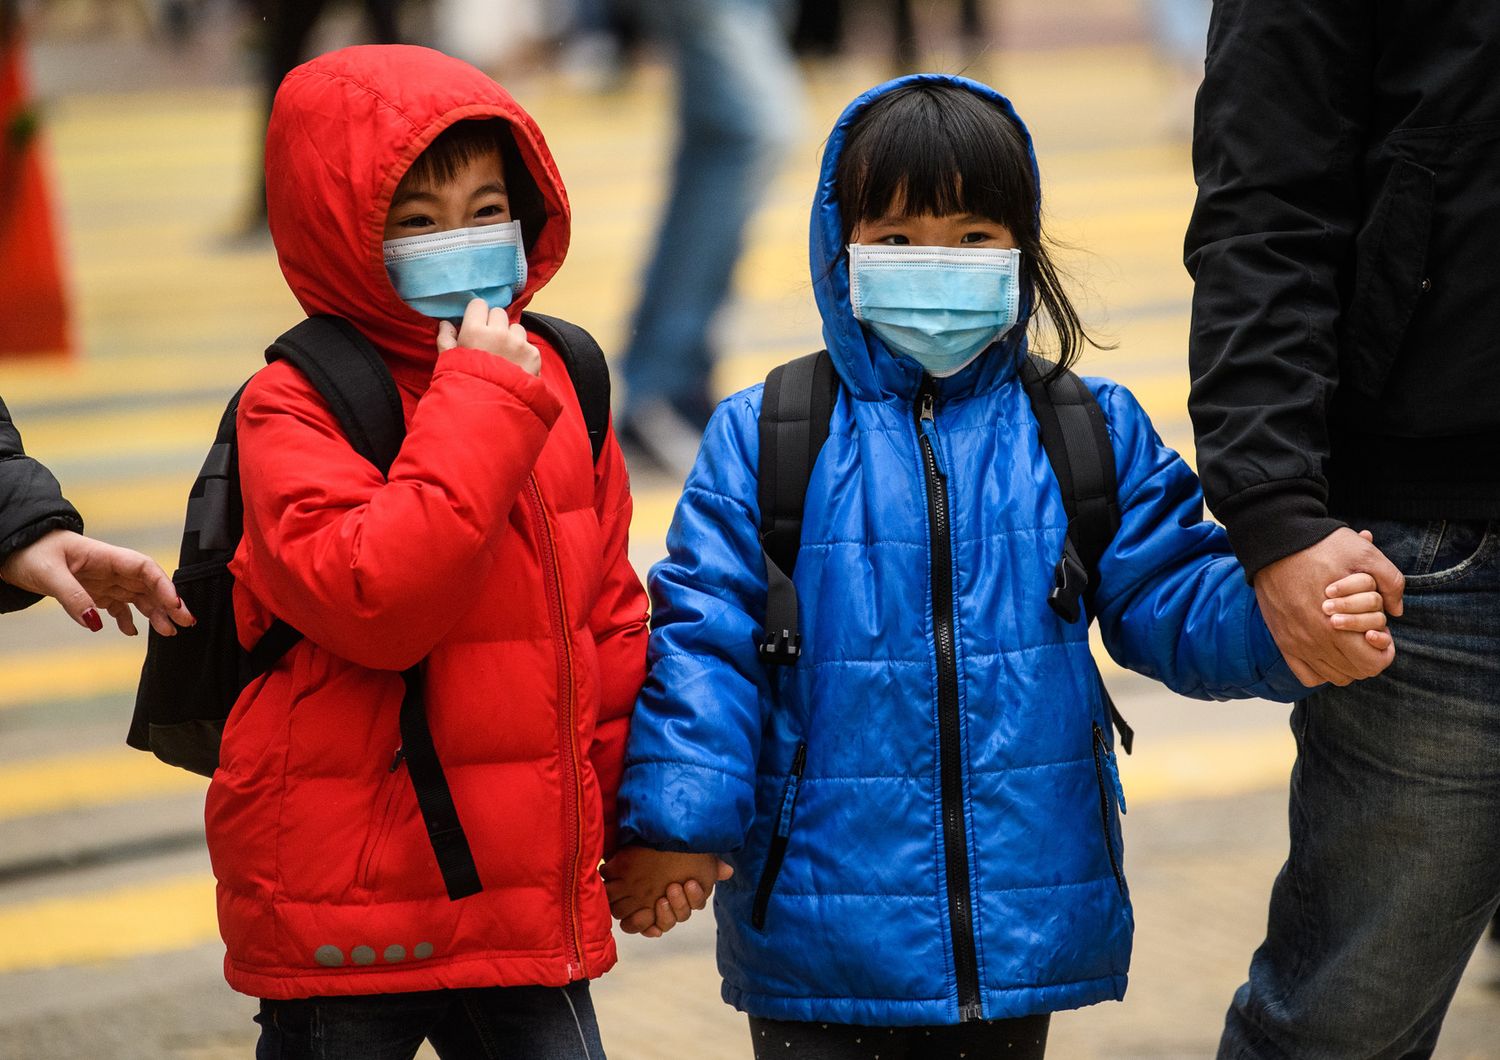 Bambini cinesi con la mascherina a protezione dal coronavirus